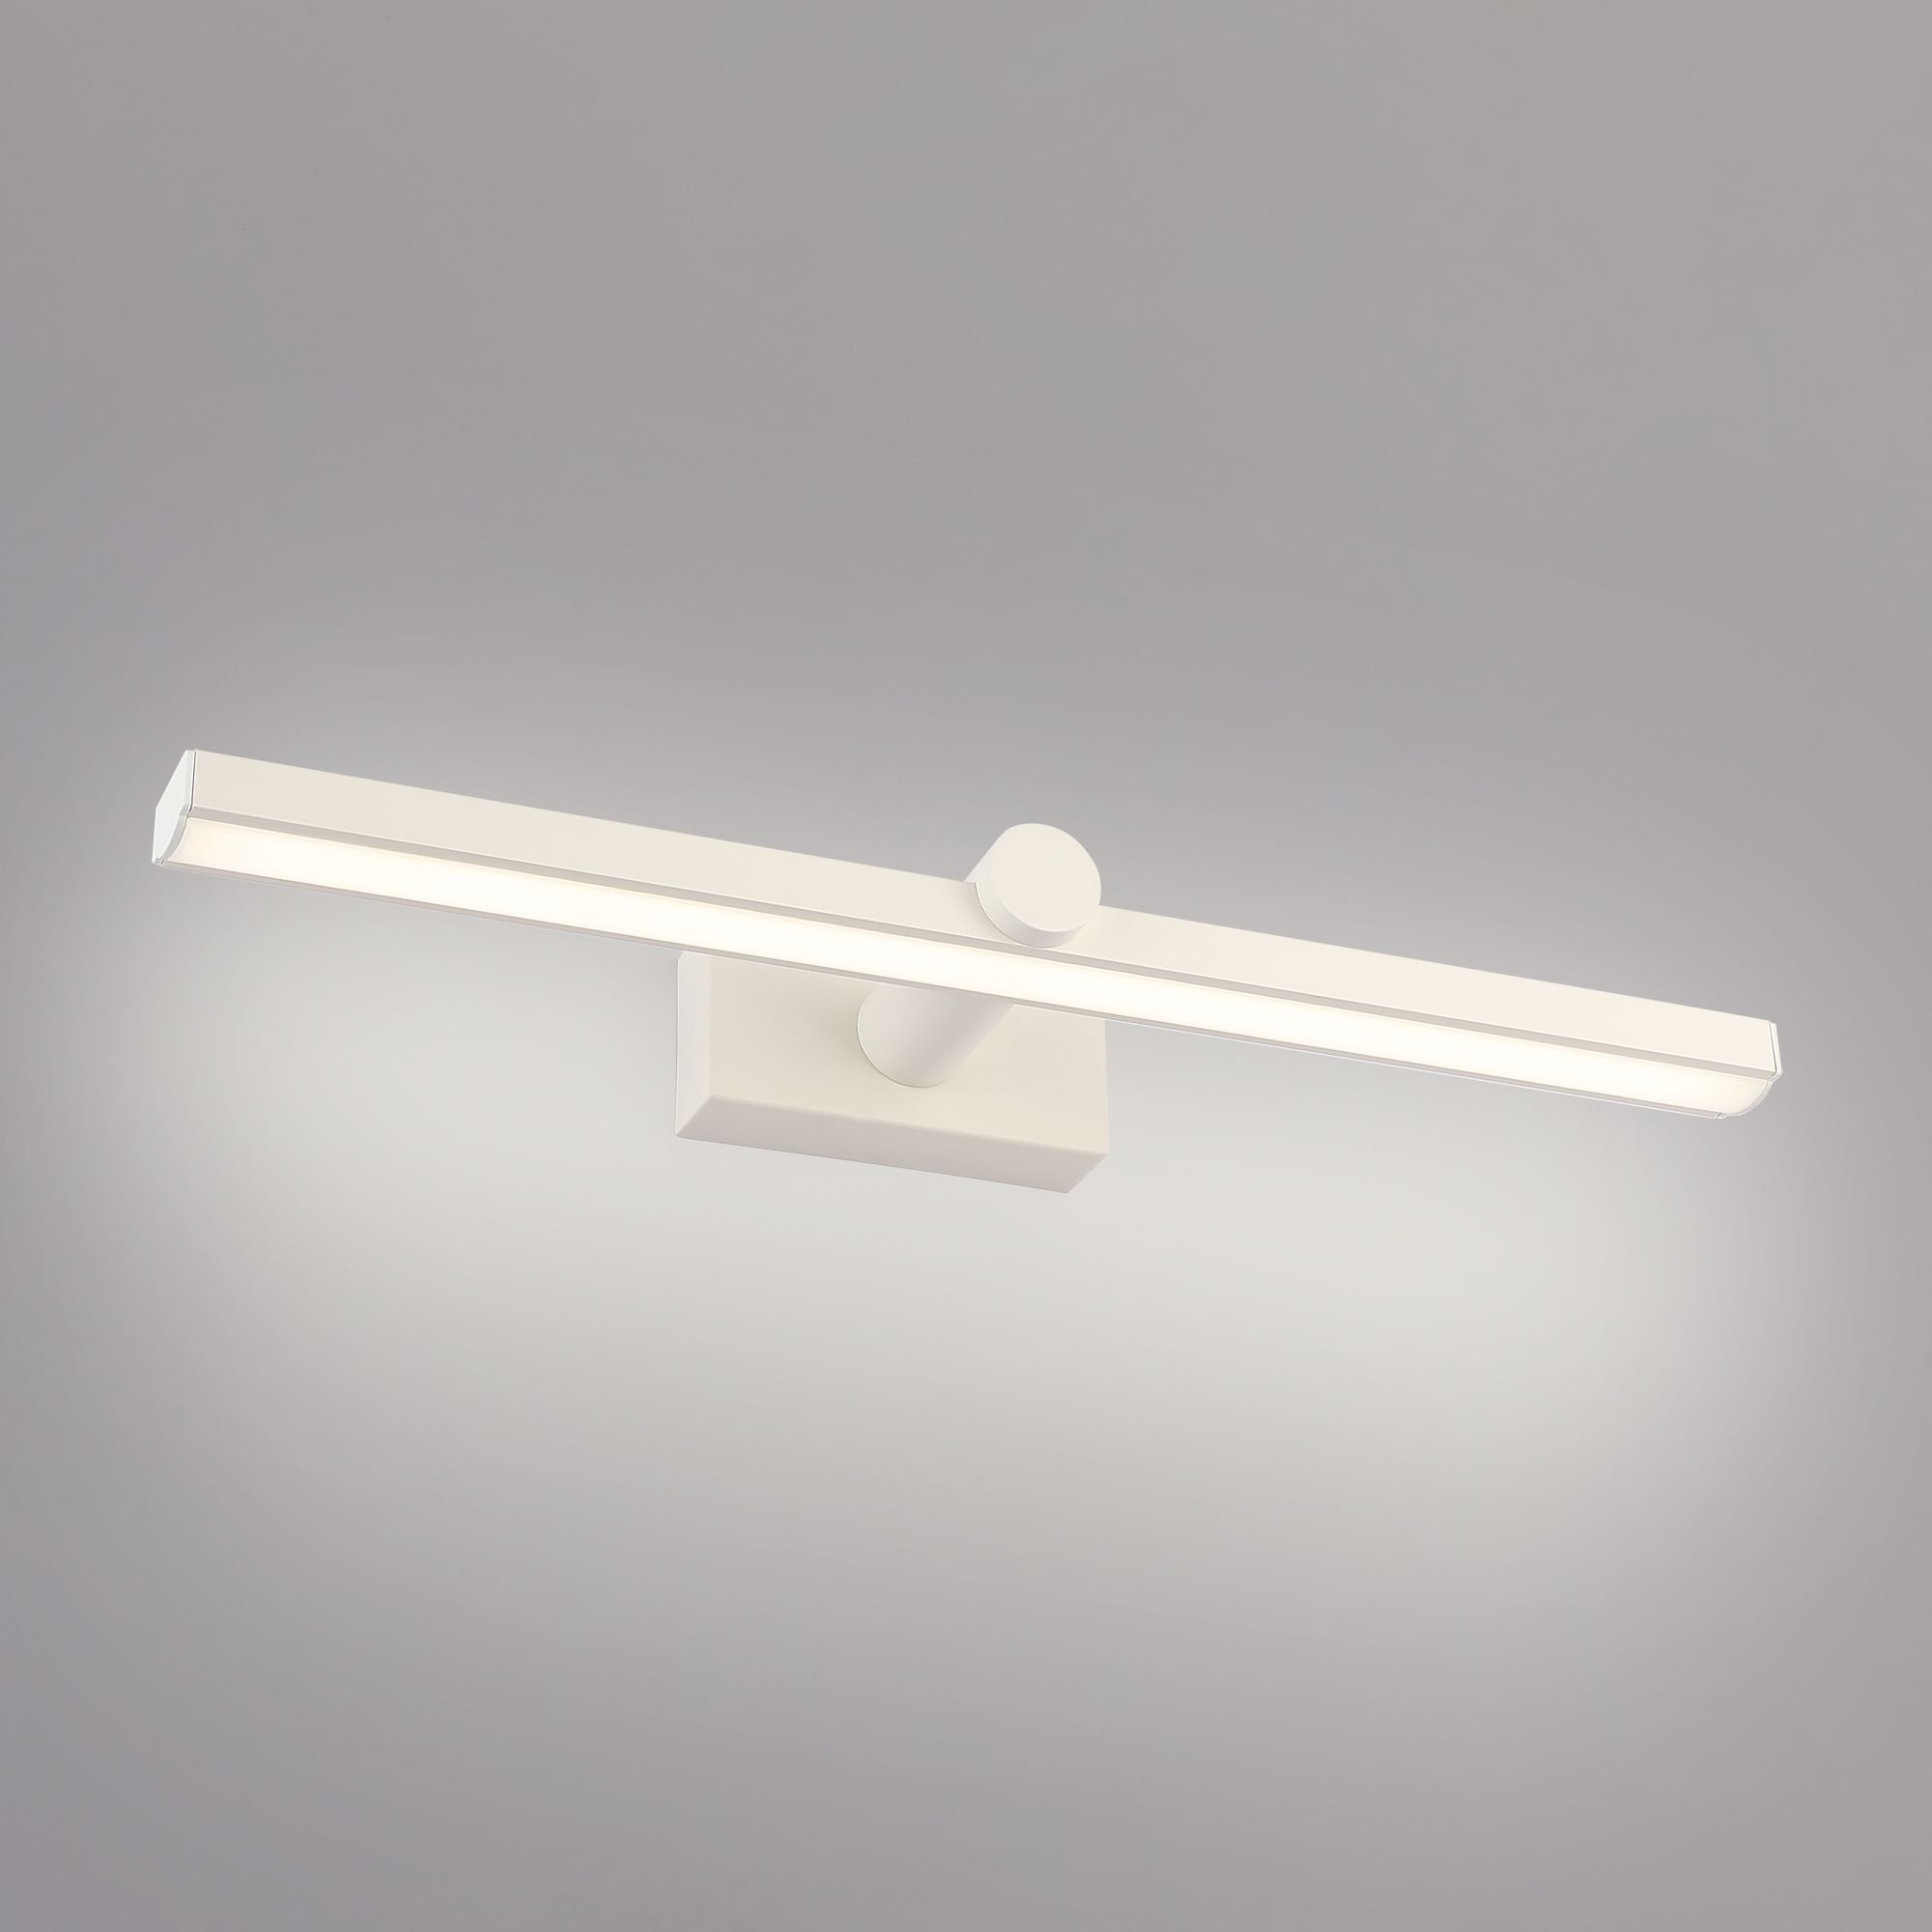 Настенный светодиодный светильник Ontario LED MRL LED 1006 белый